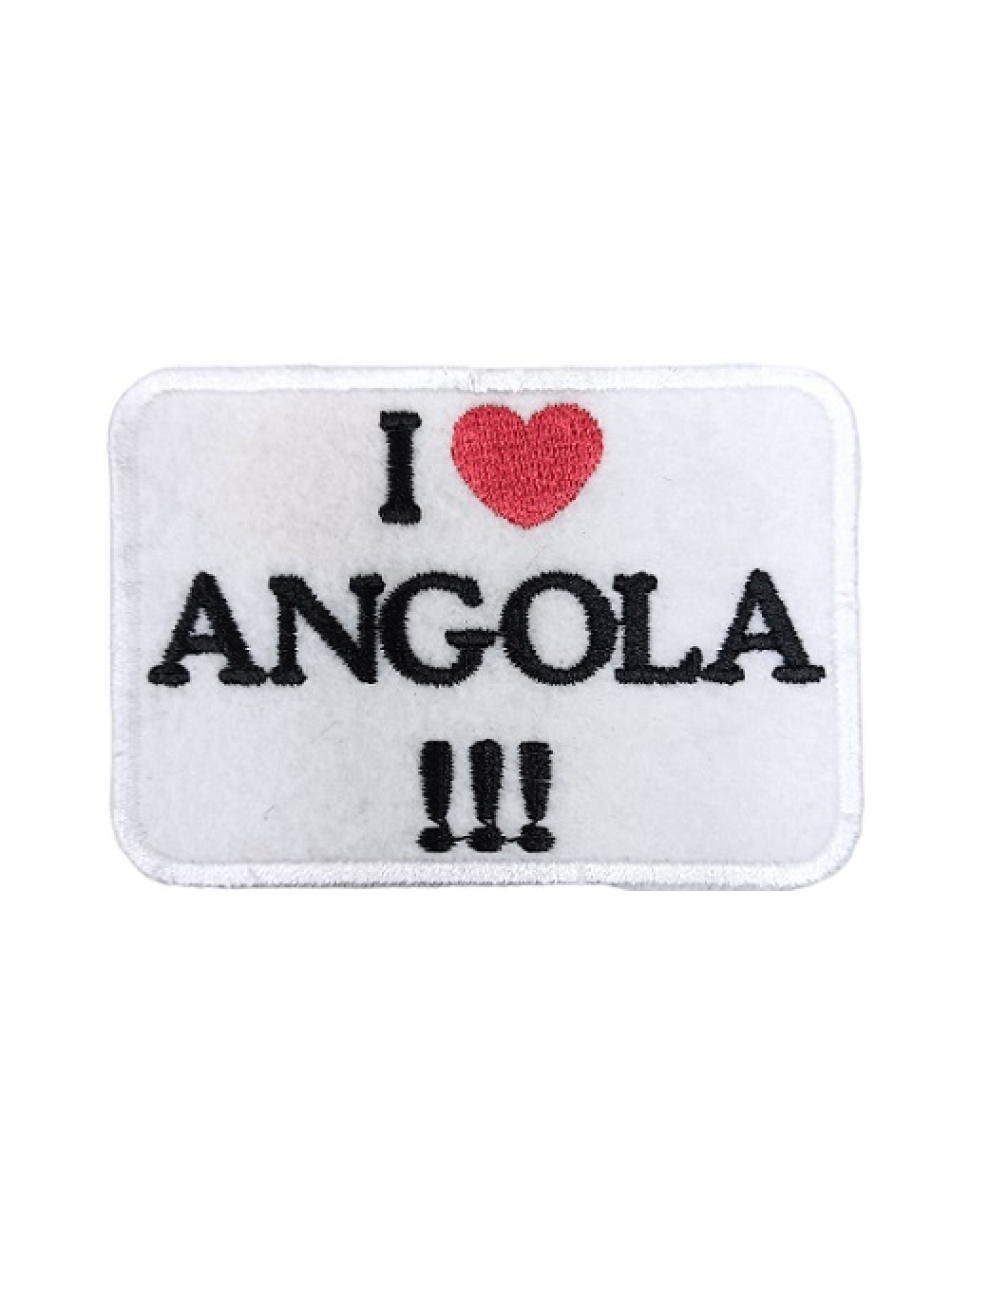 Angola - I love Angola